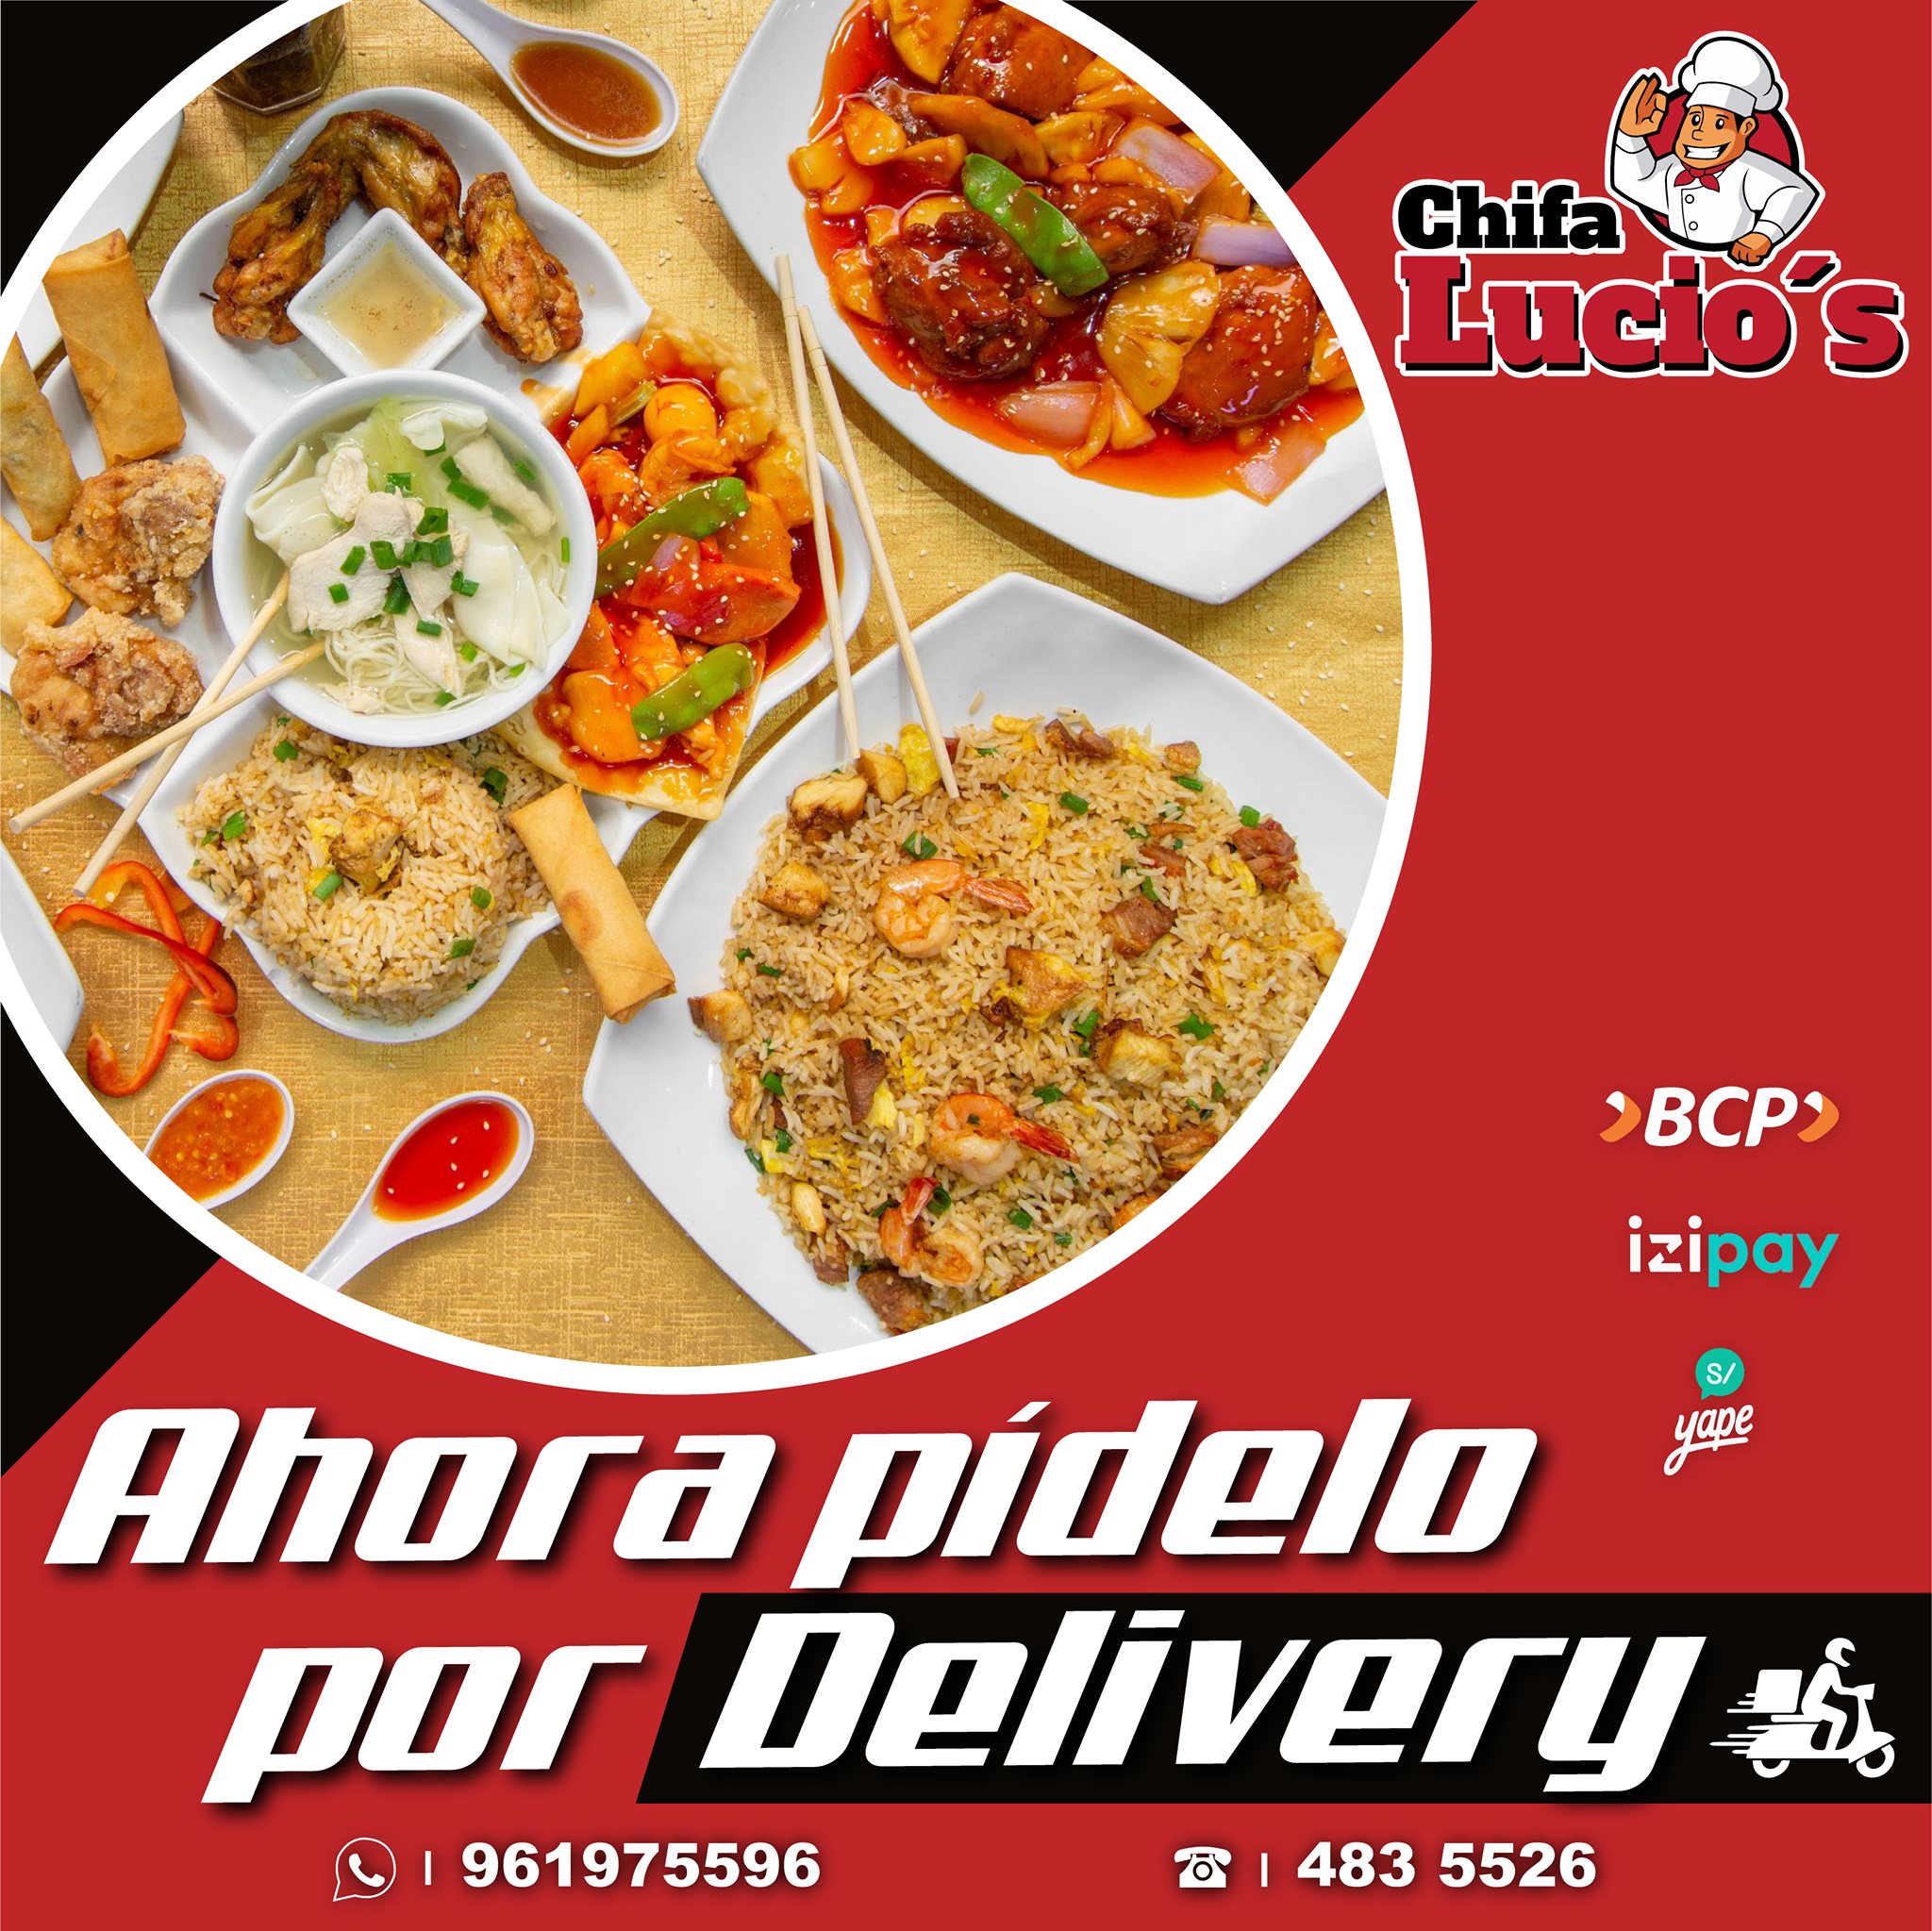 Restaurant chifa Lucio’s